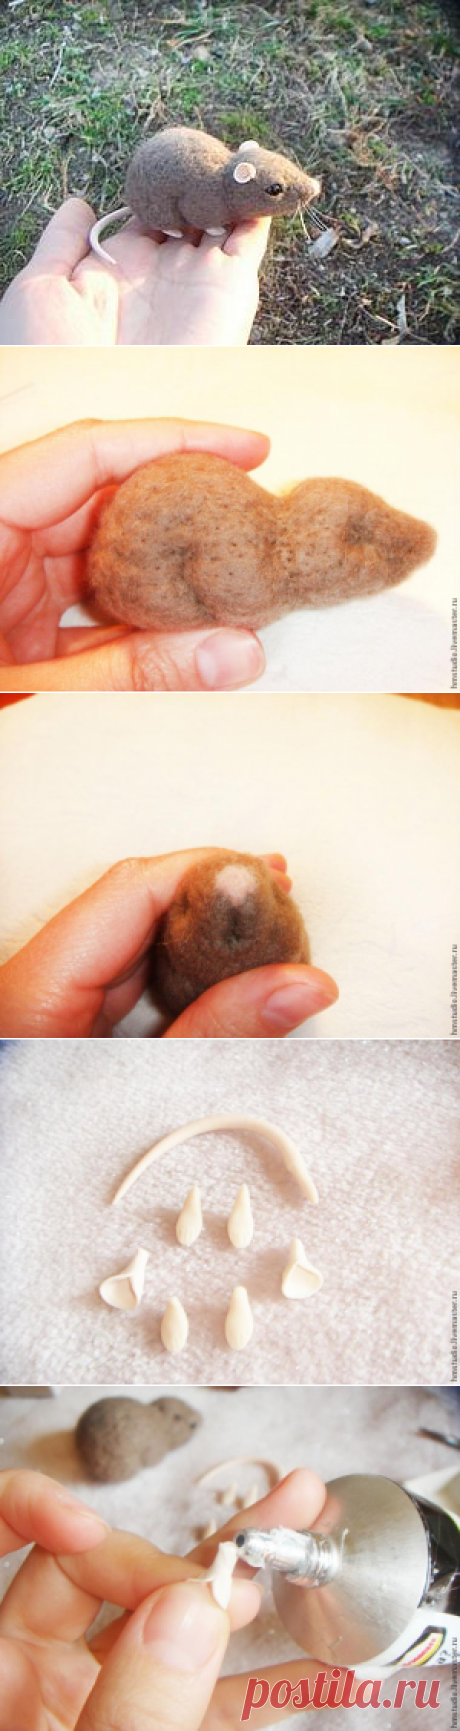 Мастер-класс: мышка в технике сухого валяния - Ярмарка Мастеров - ручная работа, handmade